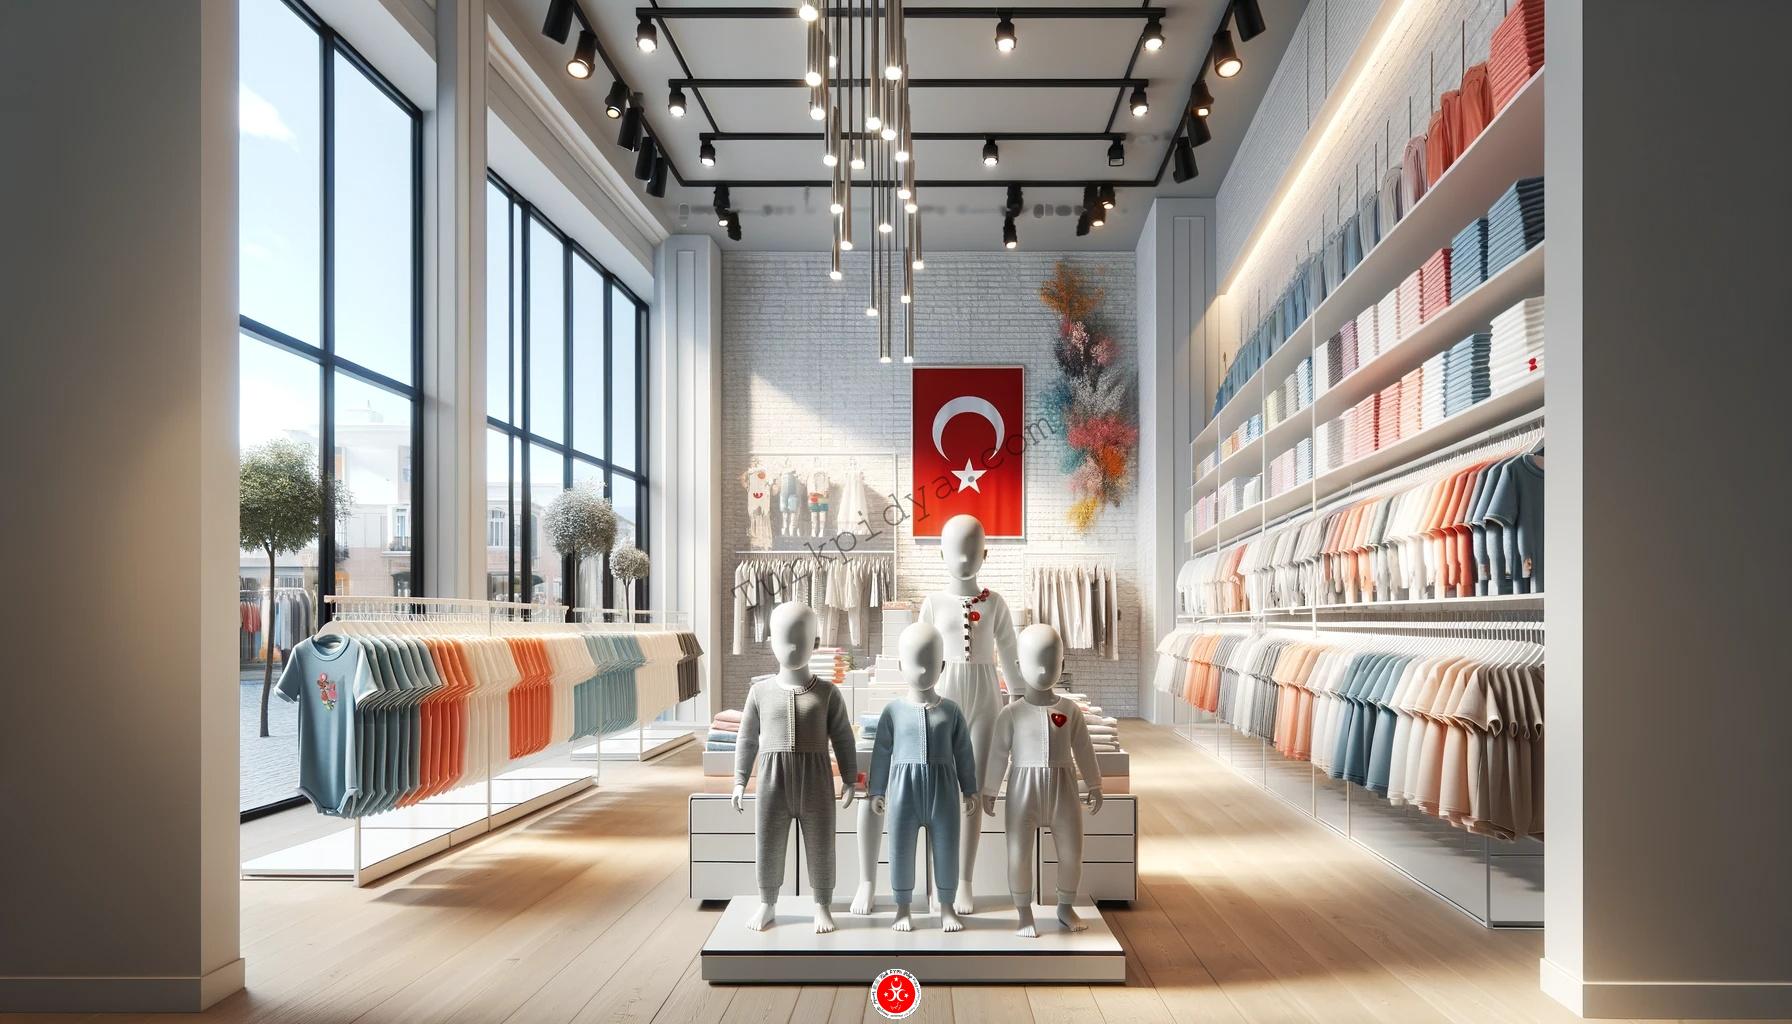 Commercio all'ingrosso di abbigliamento per bambini in Turchia